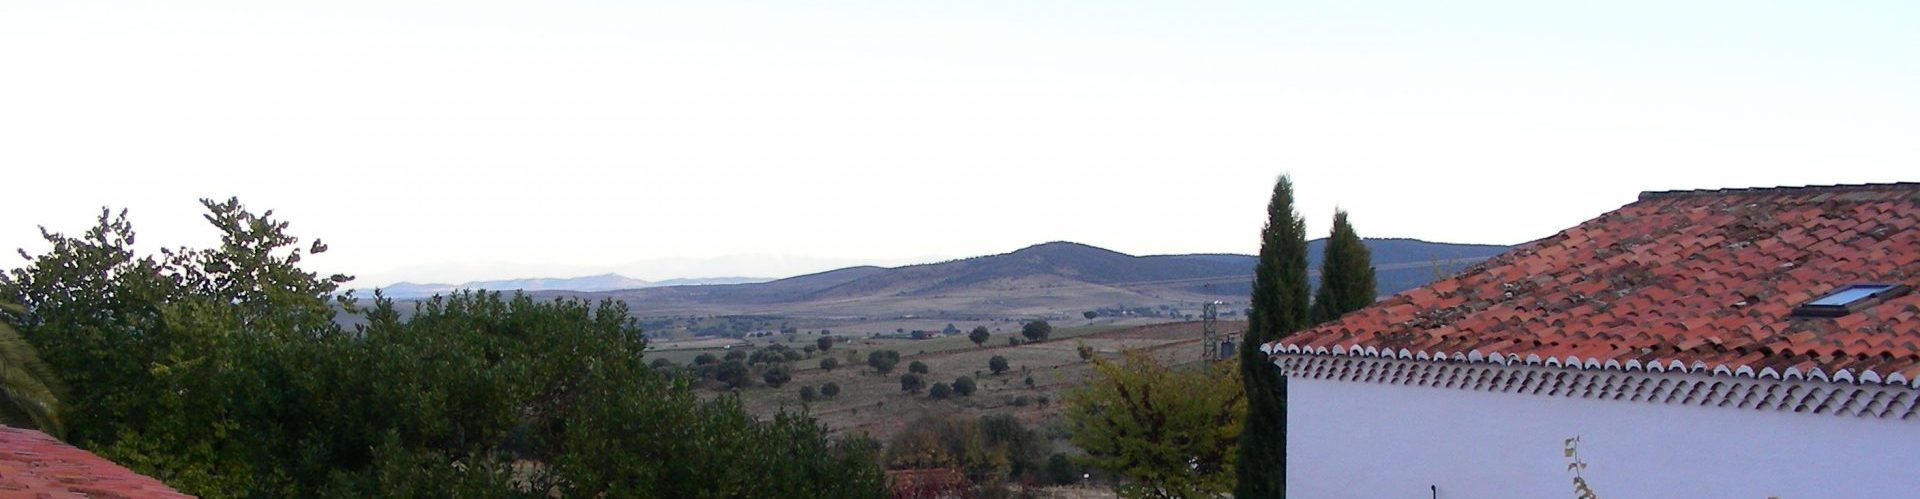 Vina-Las-Torres-Extremadura